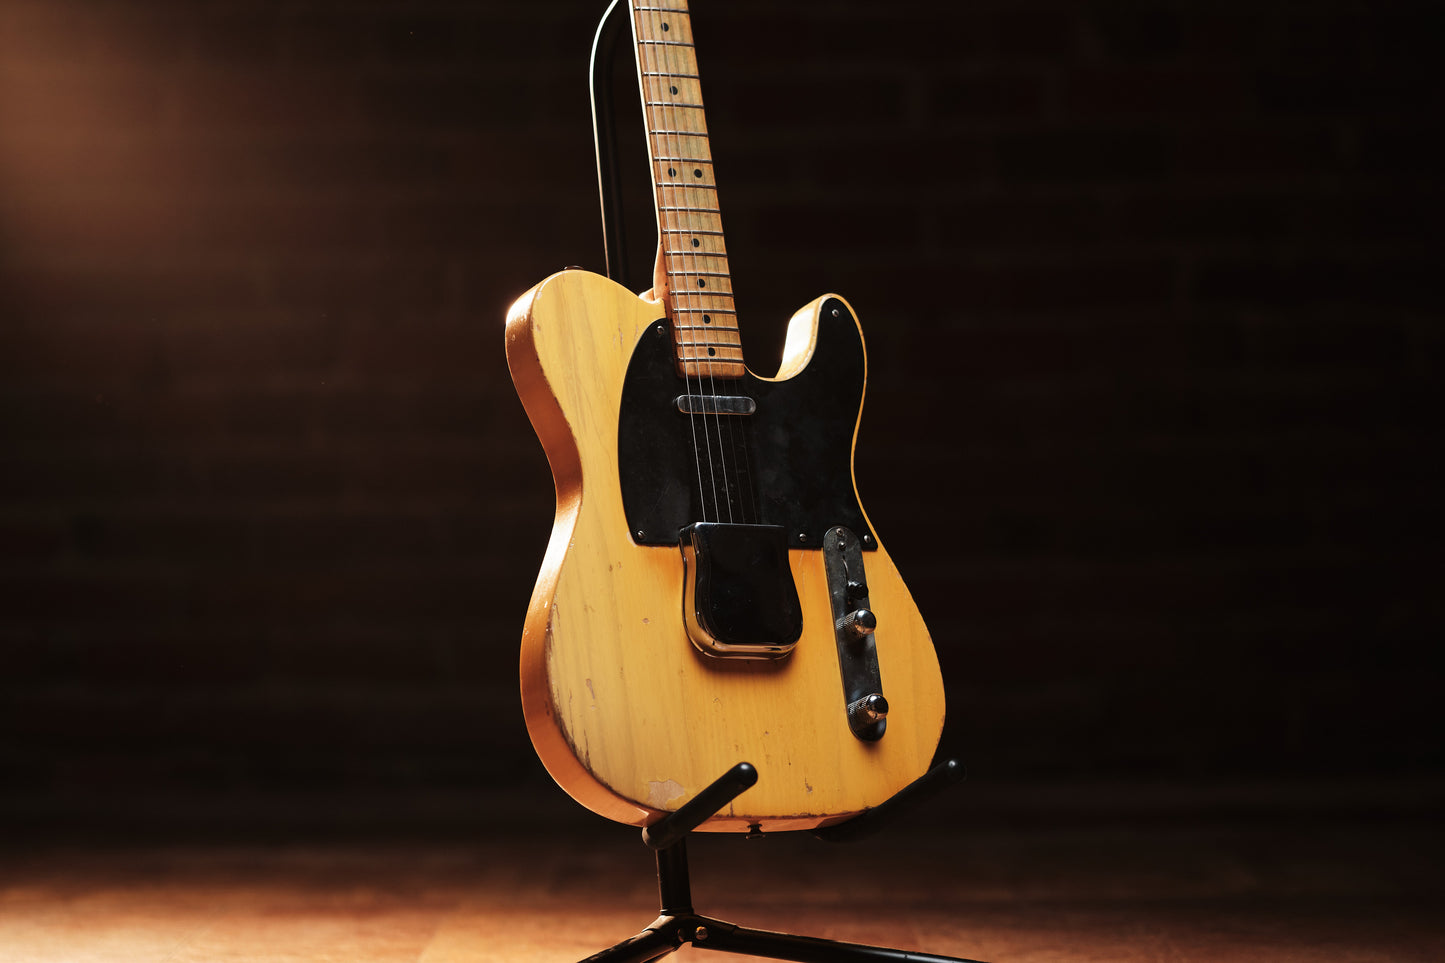 *HOLD* 1952 Fender Telecaster